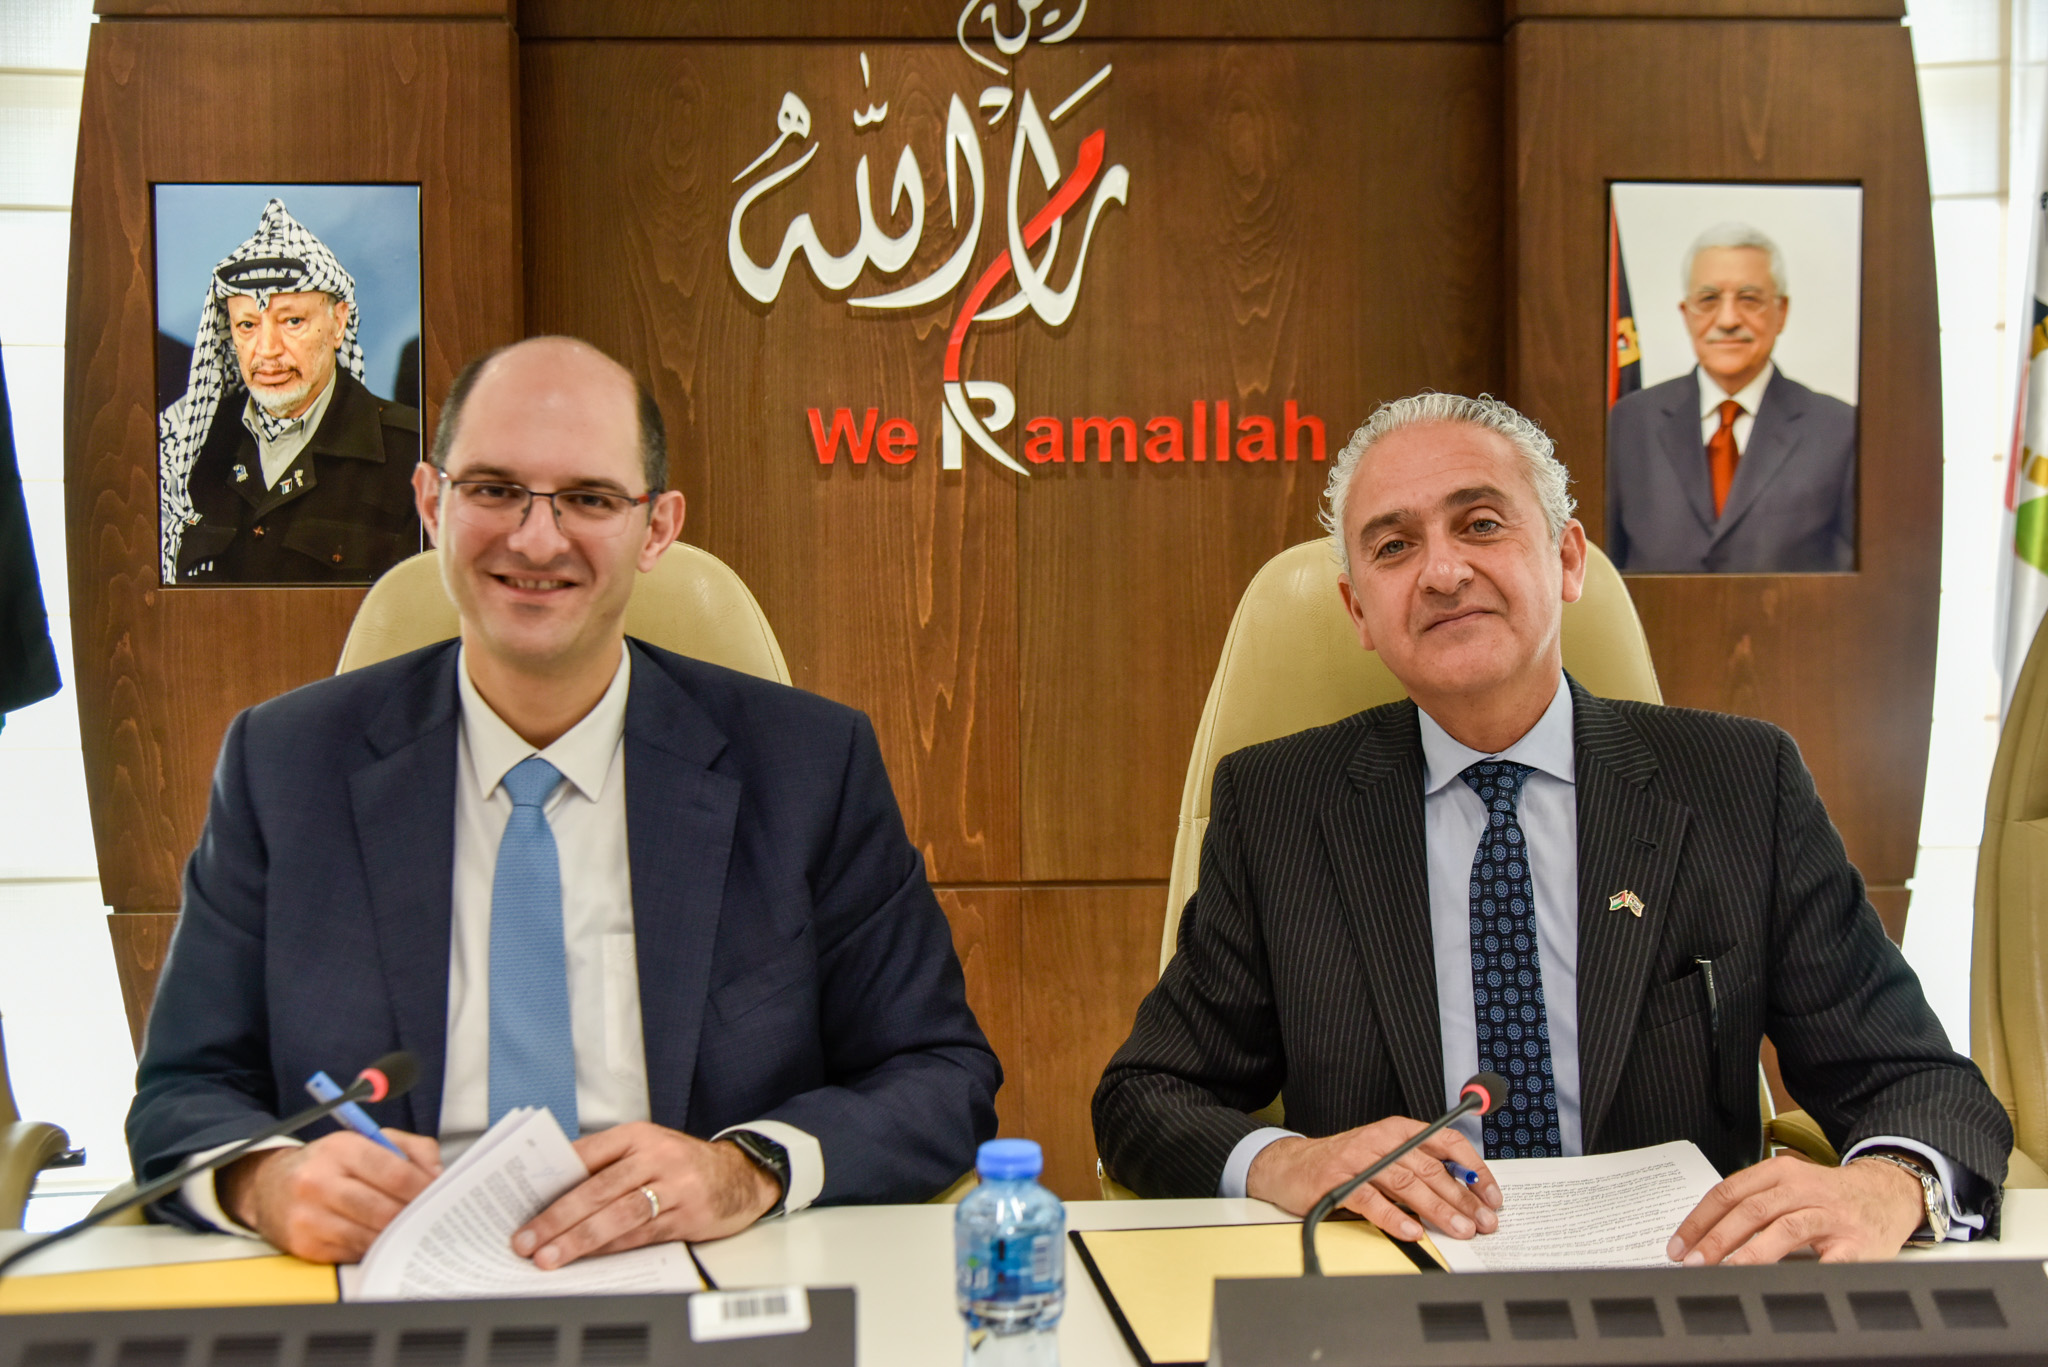   بنك فلسطين وبلدية رام الله يوقعان اتفاقية لتقديم خدمات التجارة الإلكترونية